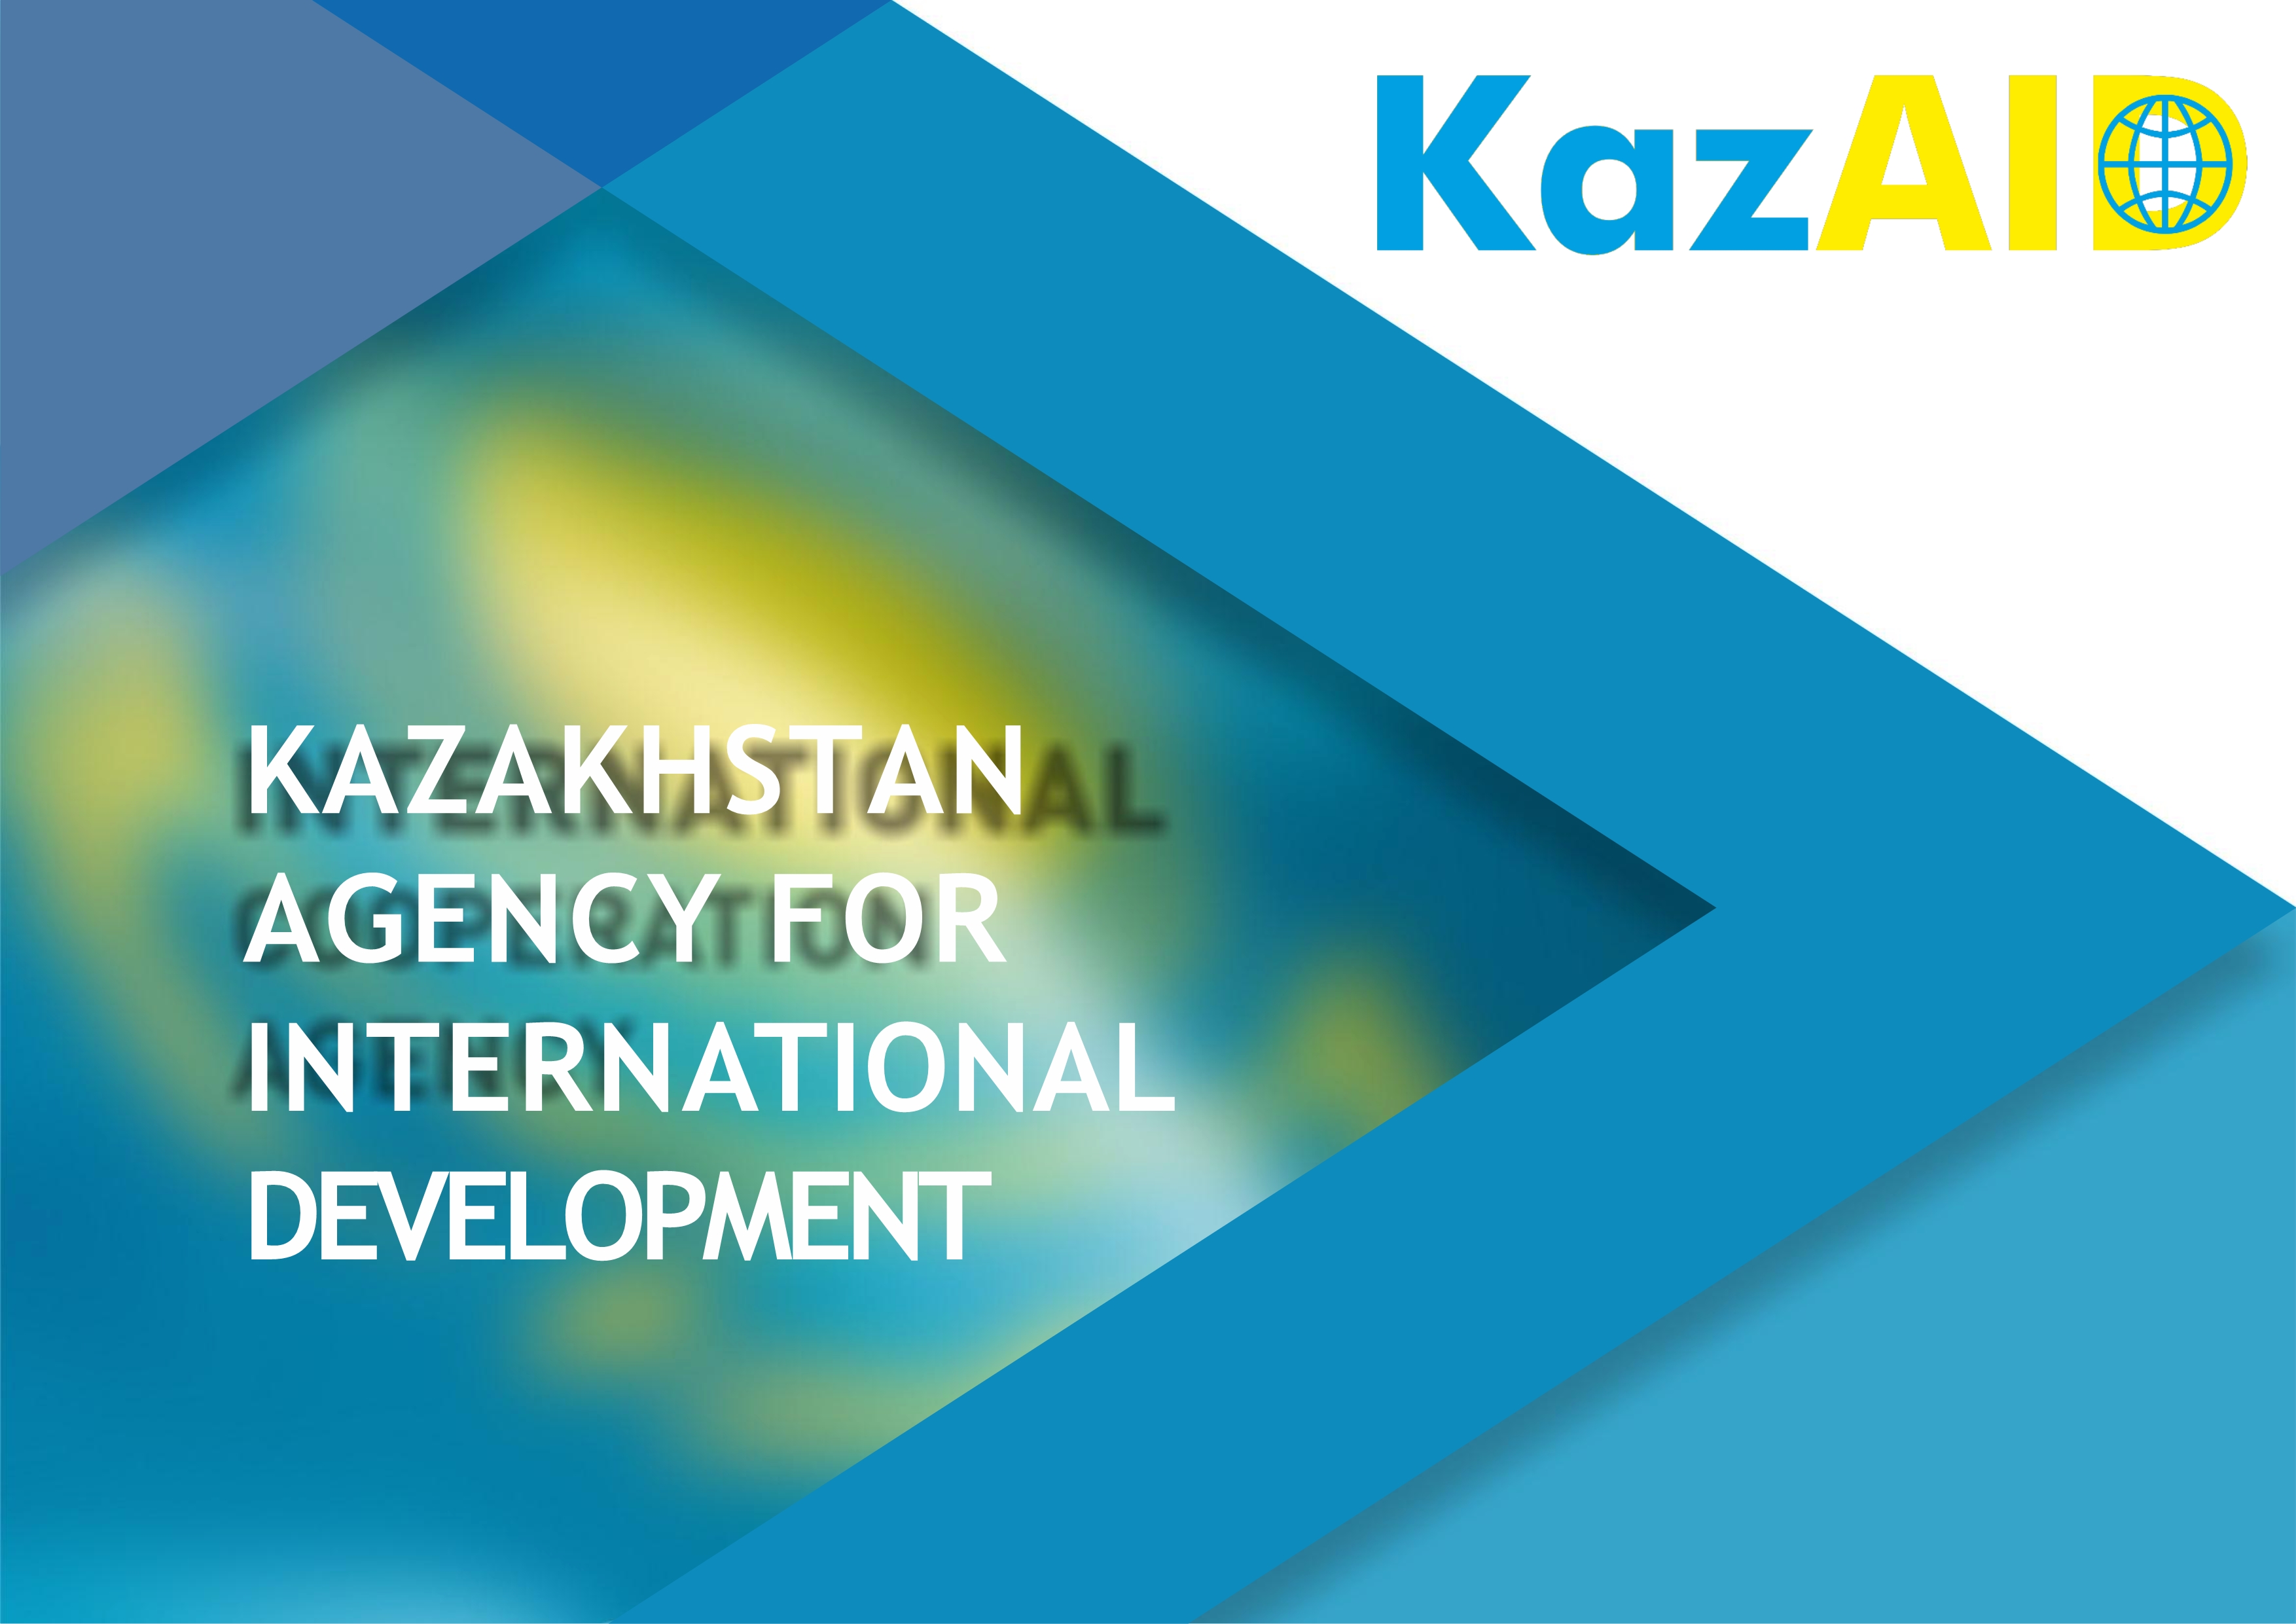 В Республике Казахстан создано некоммерческое акционерное общество «Казахстанское агентство международного развития KazAID».